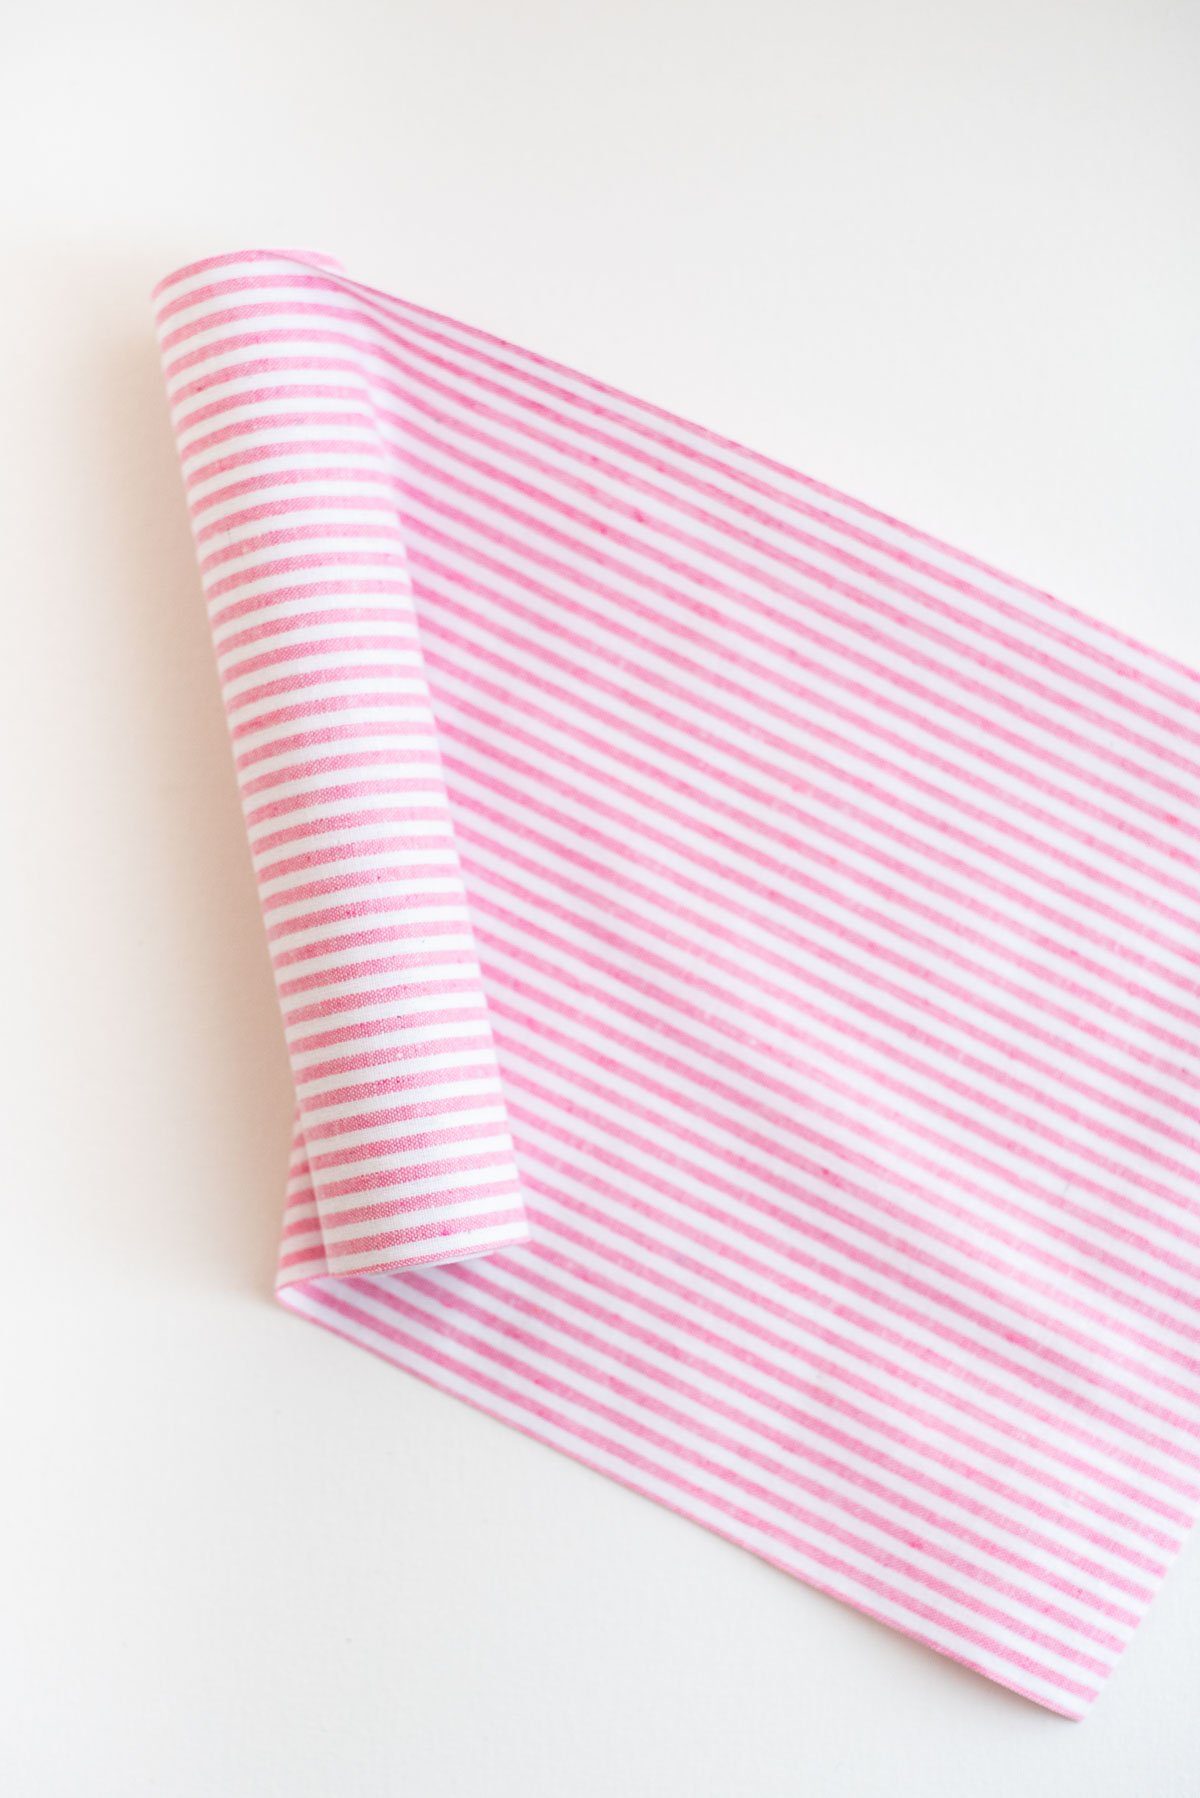 Tischläufer Leinen rosa-weiß gestreift